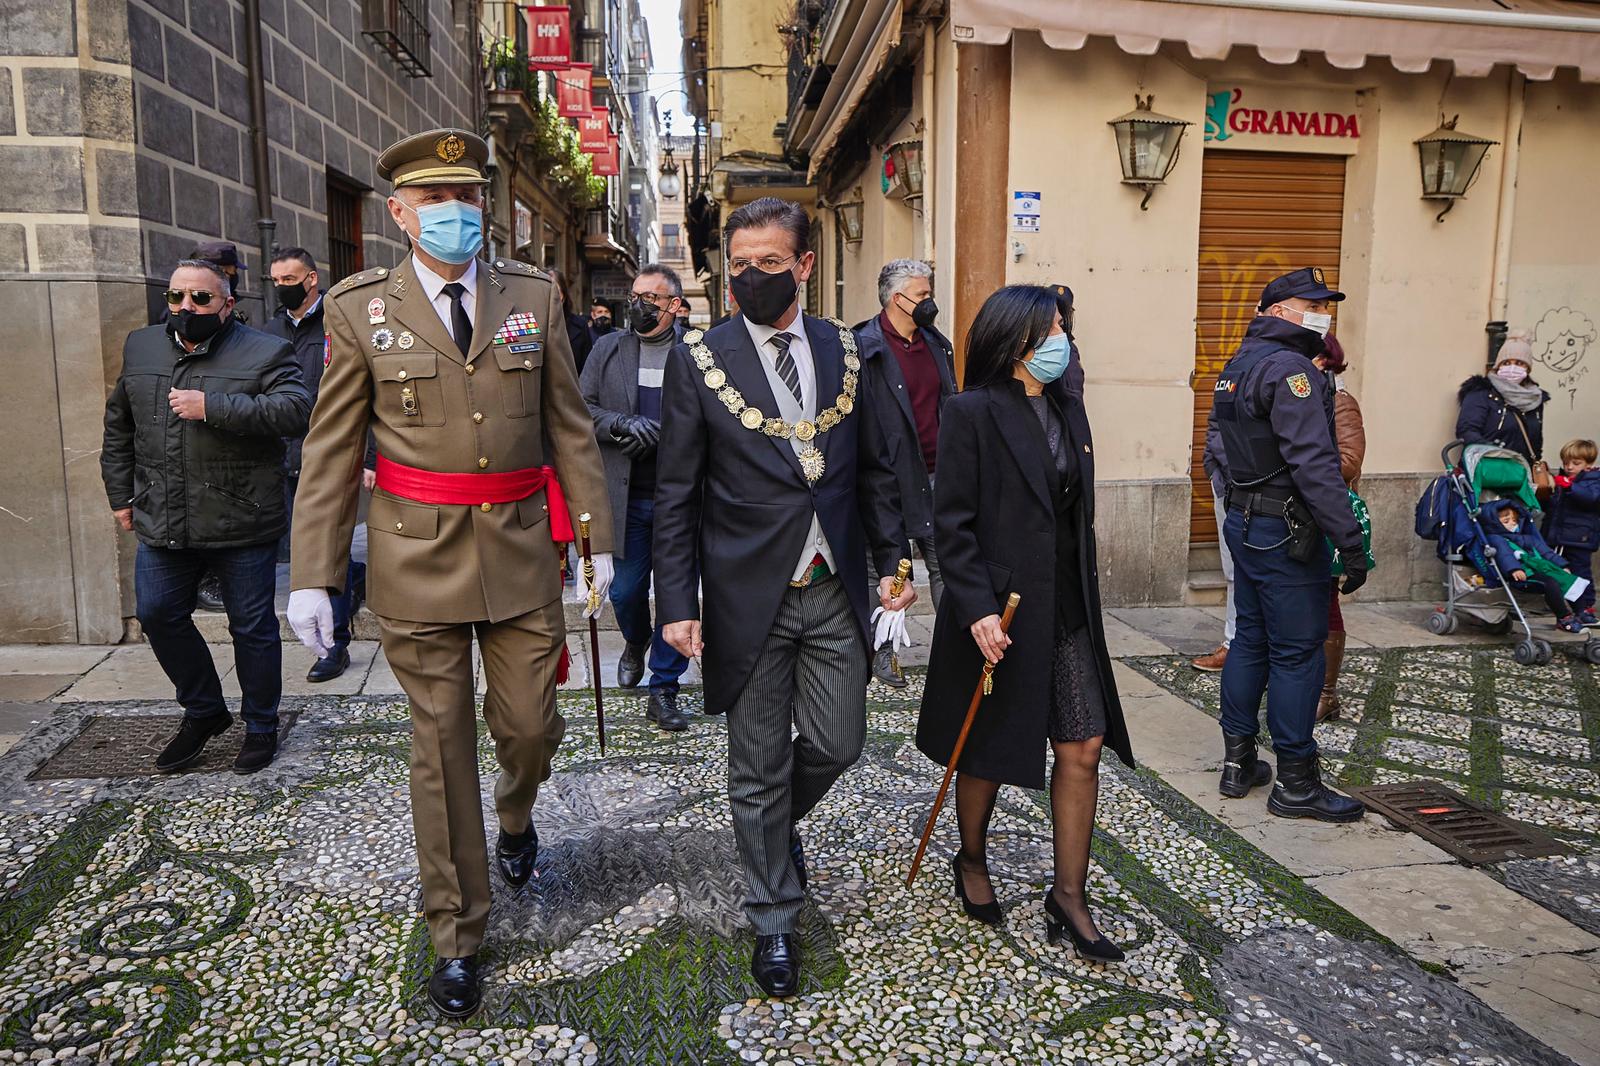 Imagen de la pasada Toma de Granada, con el alcalde Luis Salvador en el centro. Autor: Oficial del Mando de Adiestramiento y Doctrina